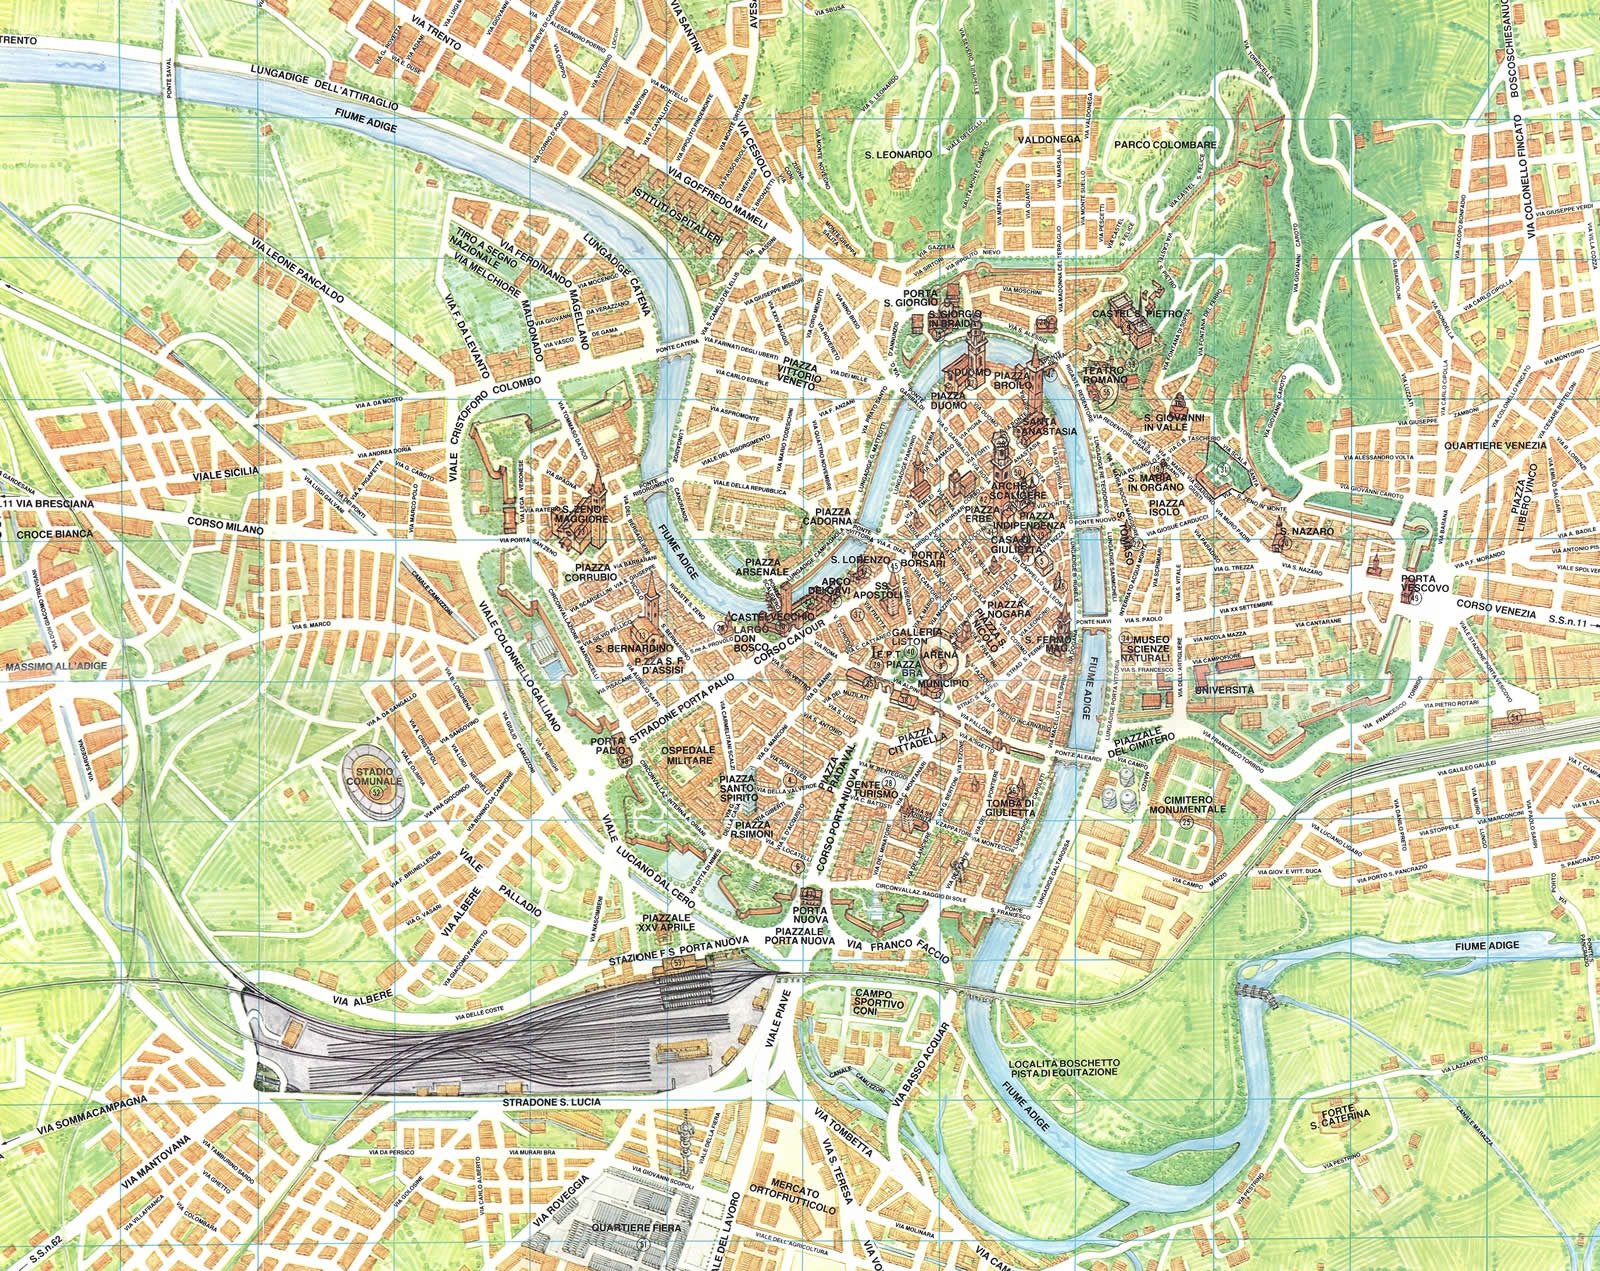 Verona tourist map